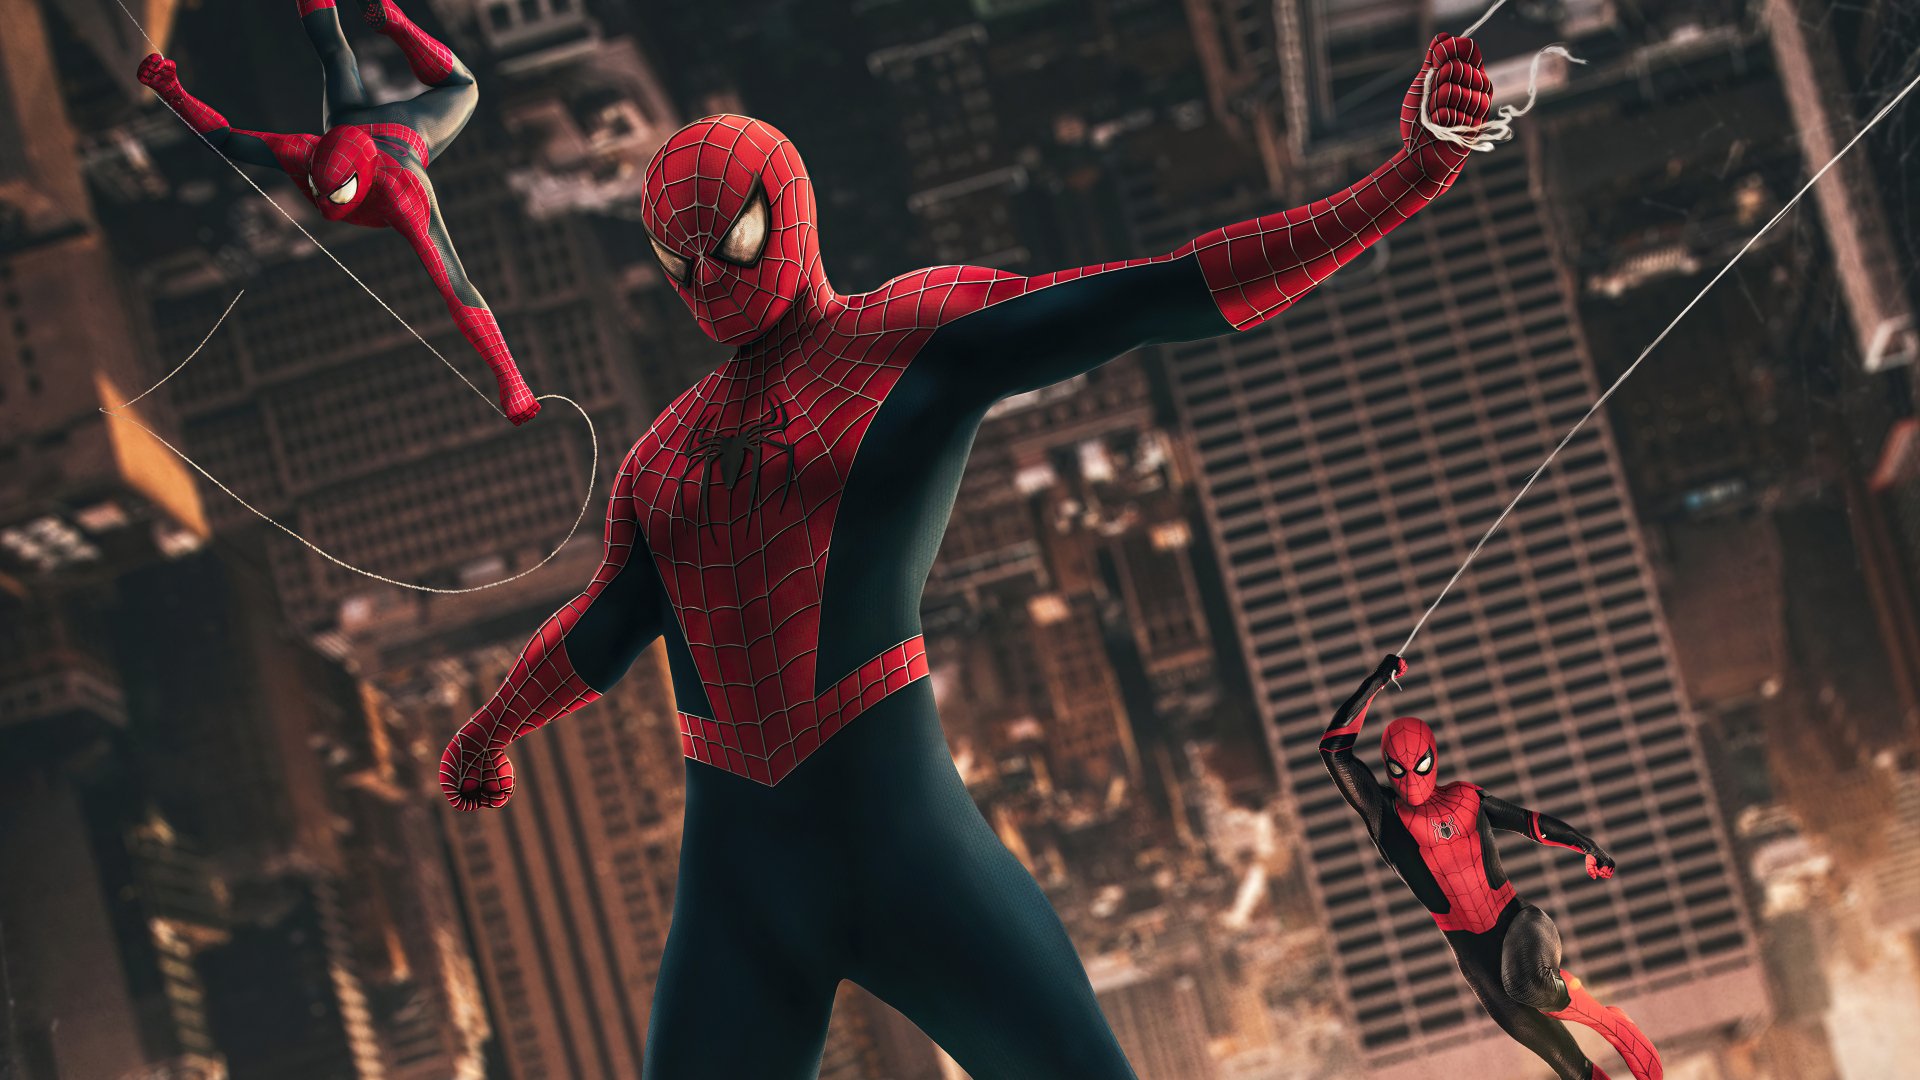 Spider-Man: Phim siêu anh hùng Bạn là fan của siêu anh hùng Spider-Man? Nếu có, bạn không thể bỏ qua bộ phim chất lượng cao này! Hãy cùng xem Spider-Man phiêu lưu trên địa cầu để bảo vệ nhân loại khỏi các kẻ thù nguy hiểm. Đảm bảo bạn sẽ không thất vọng!